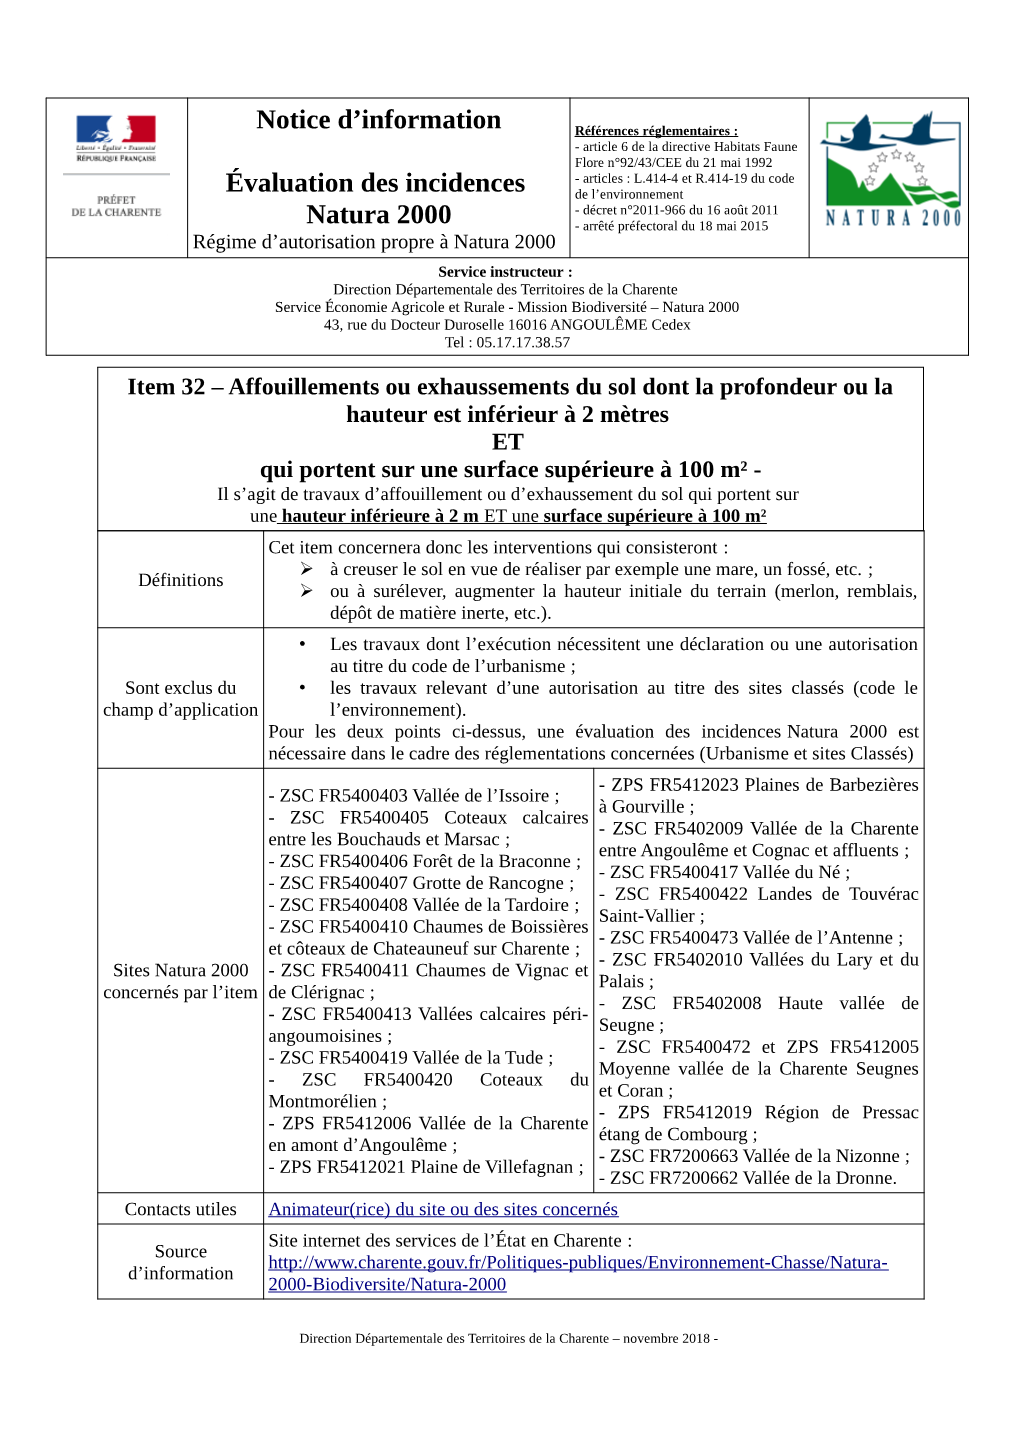 Notice D'information Évaluation Des Incidences Natura 2000